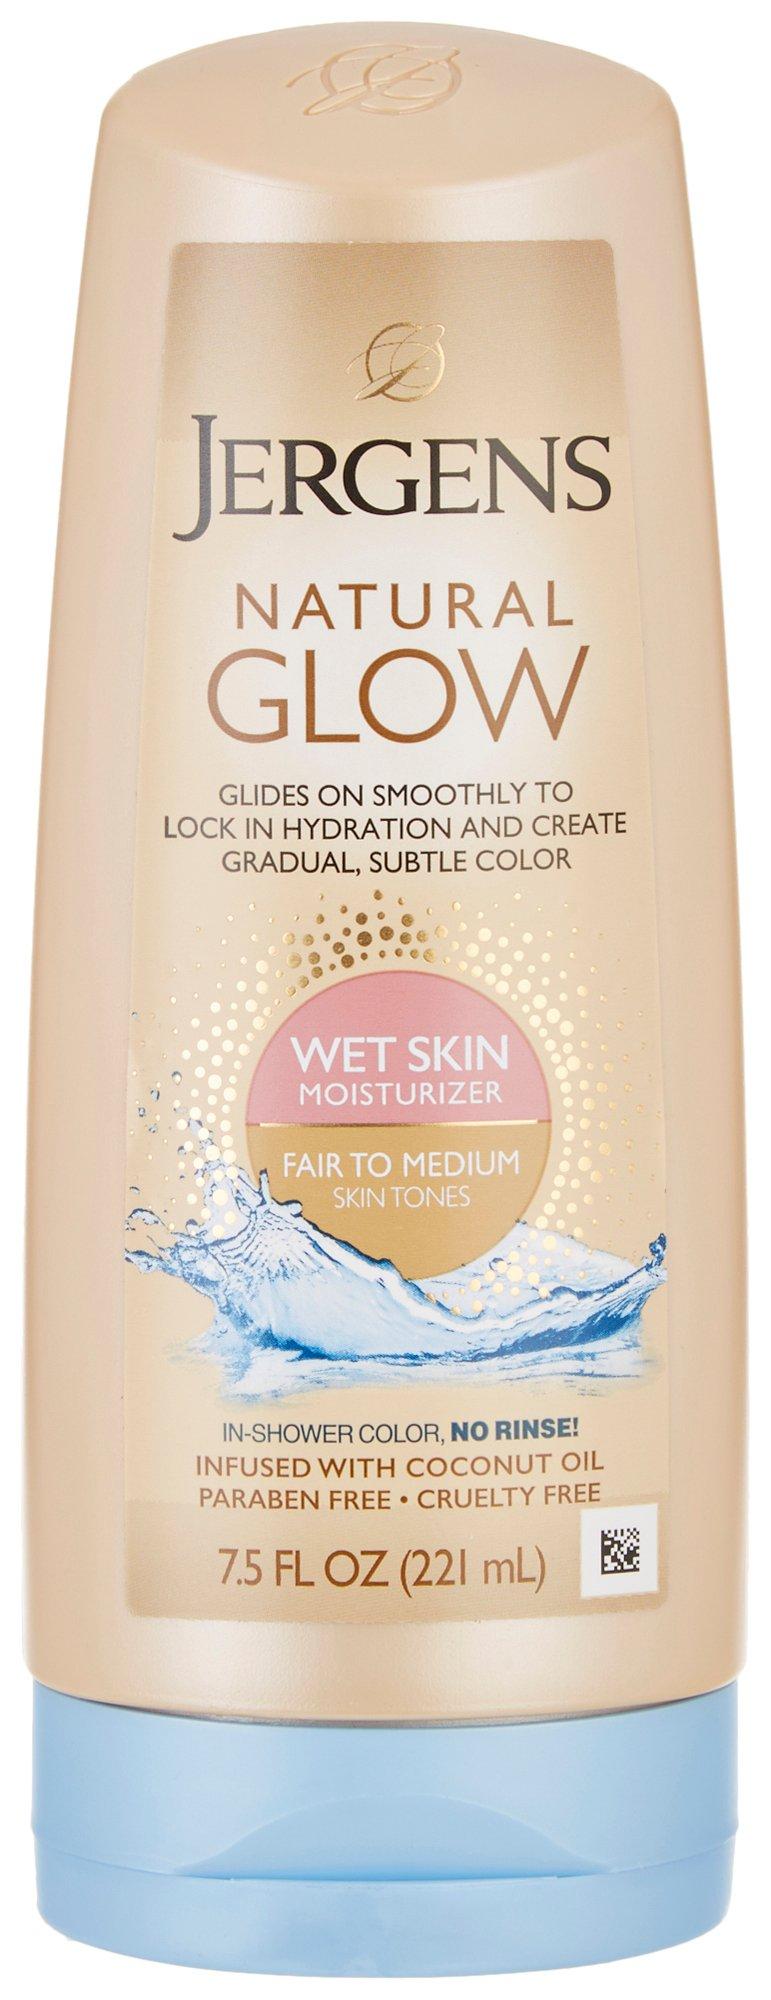 Natural Glow Fair To Medium Wet Skin Moisturizer